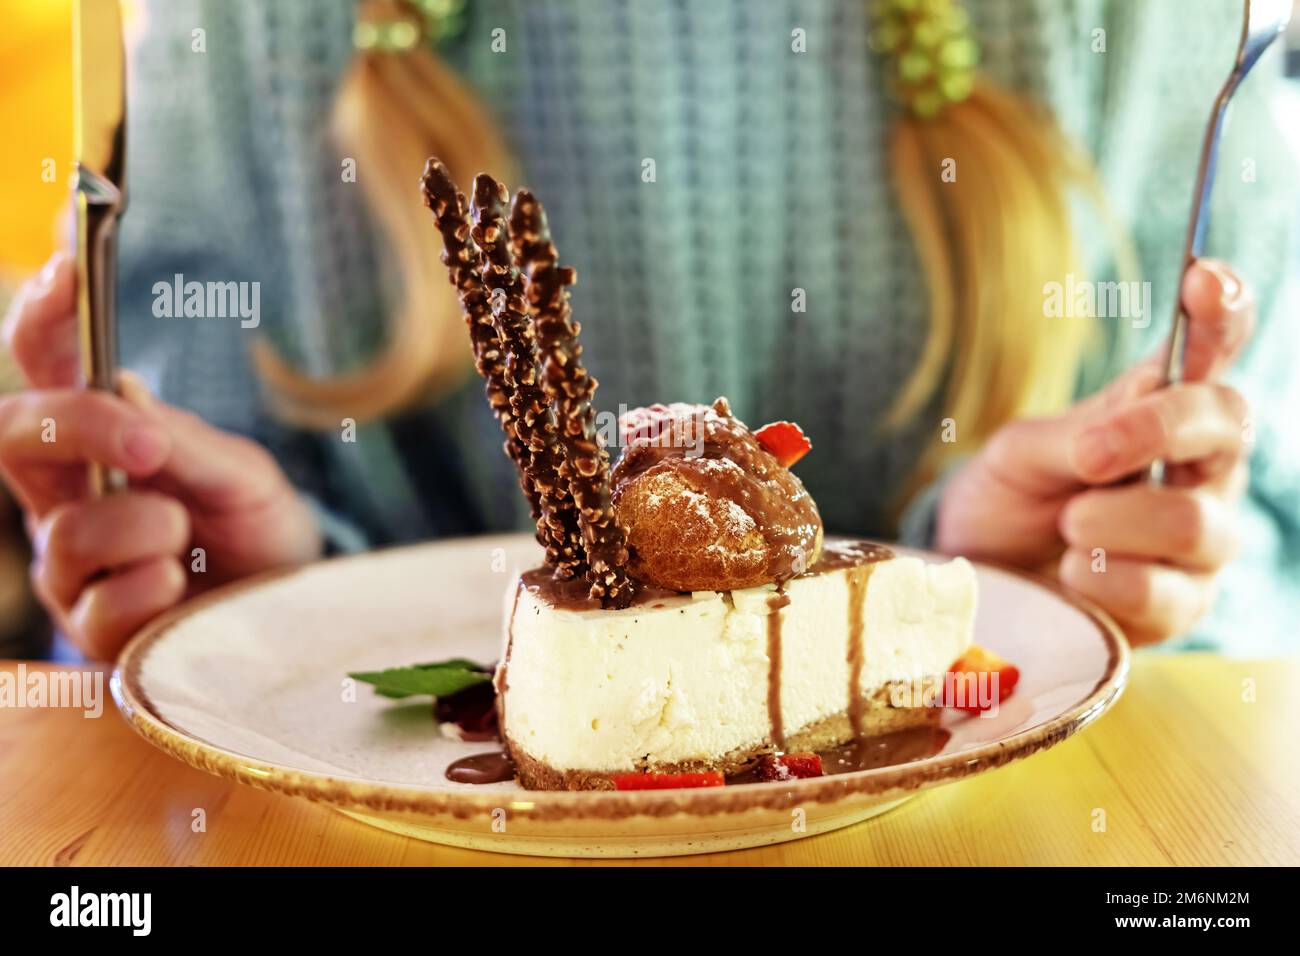 Cheesecake sur une assiette dans un café en gros plan. Cheesecake frais appétissant sur une assiette. Mise au point sélective Banque D'Images